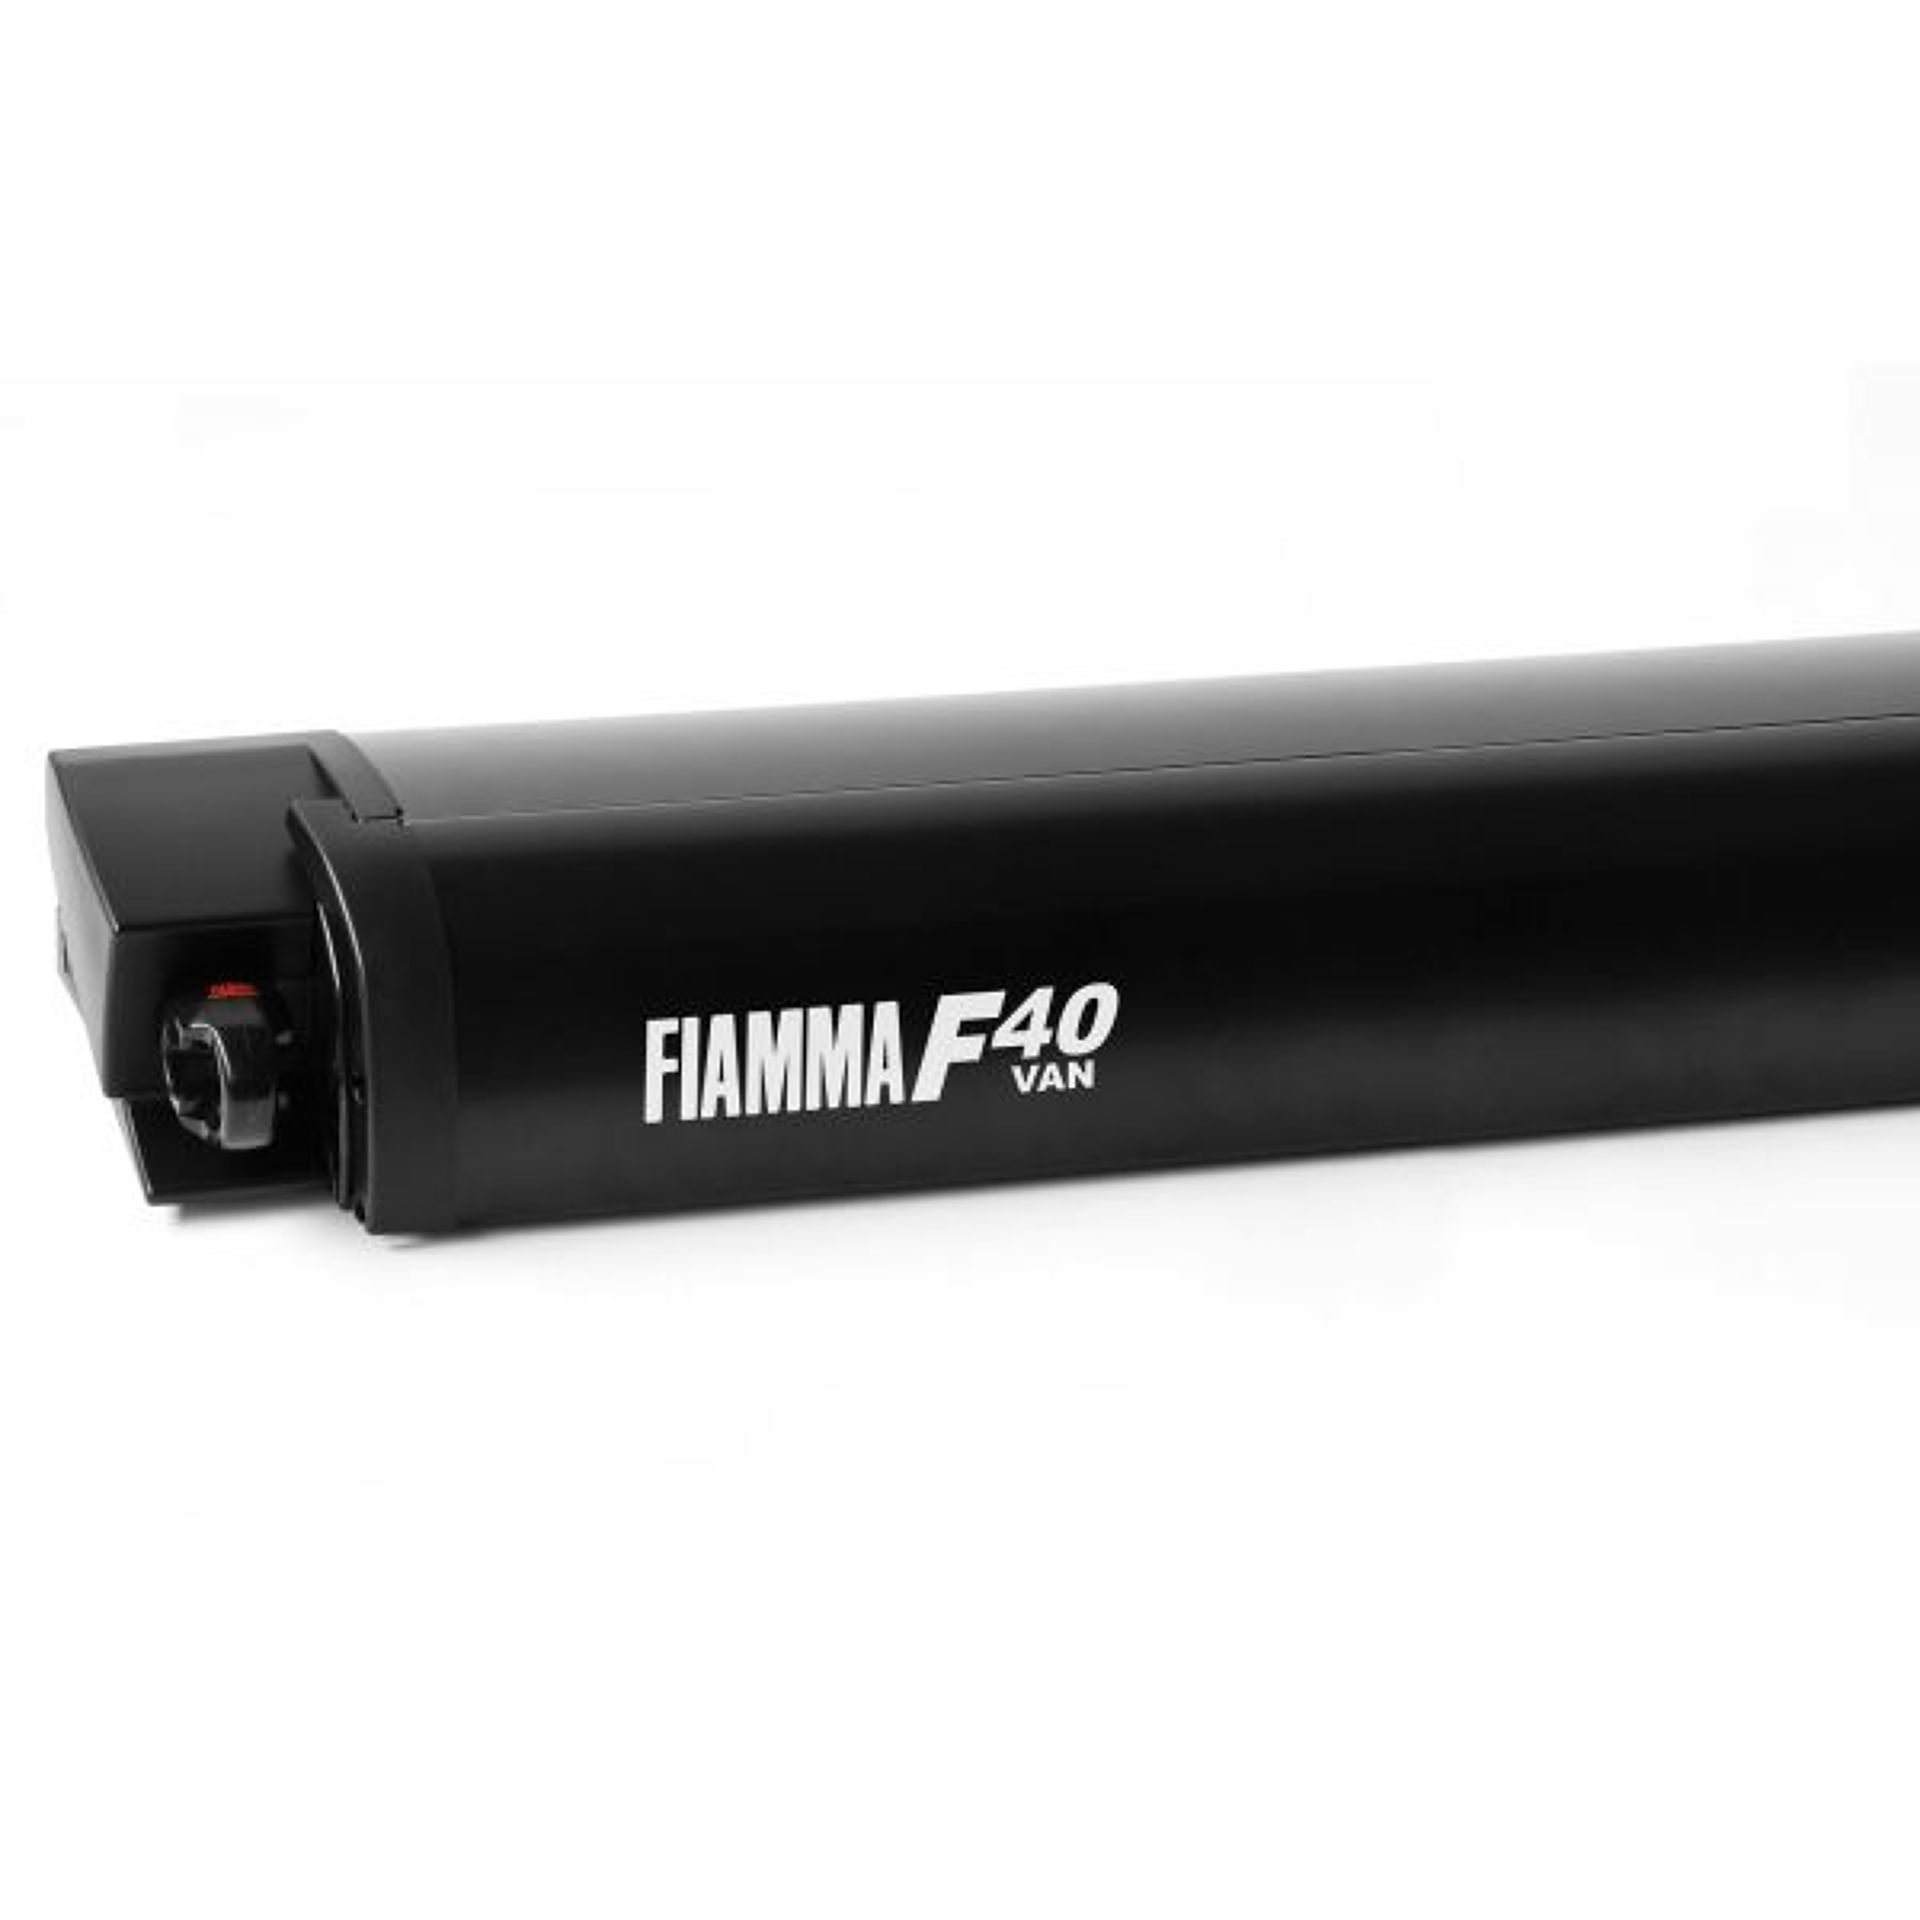 Fiamma F40 van 270